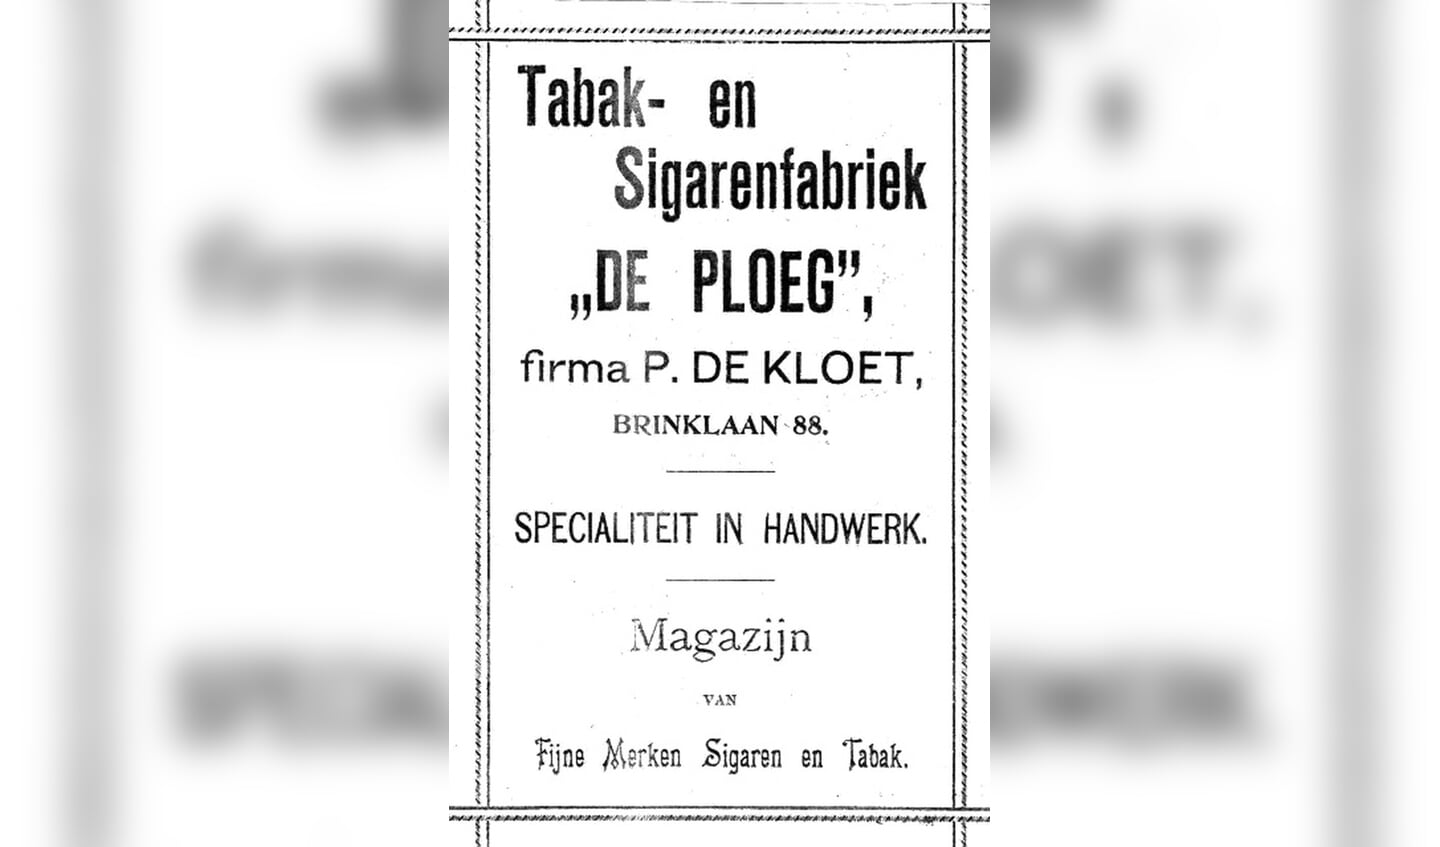 Advertentie uit 1900.
